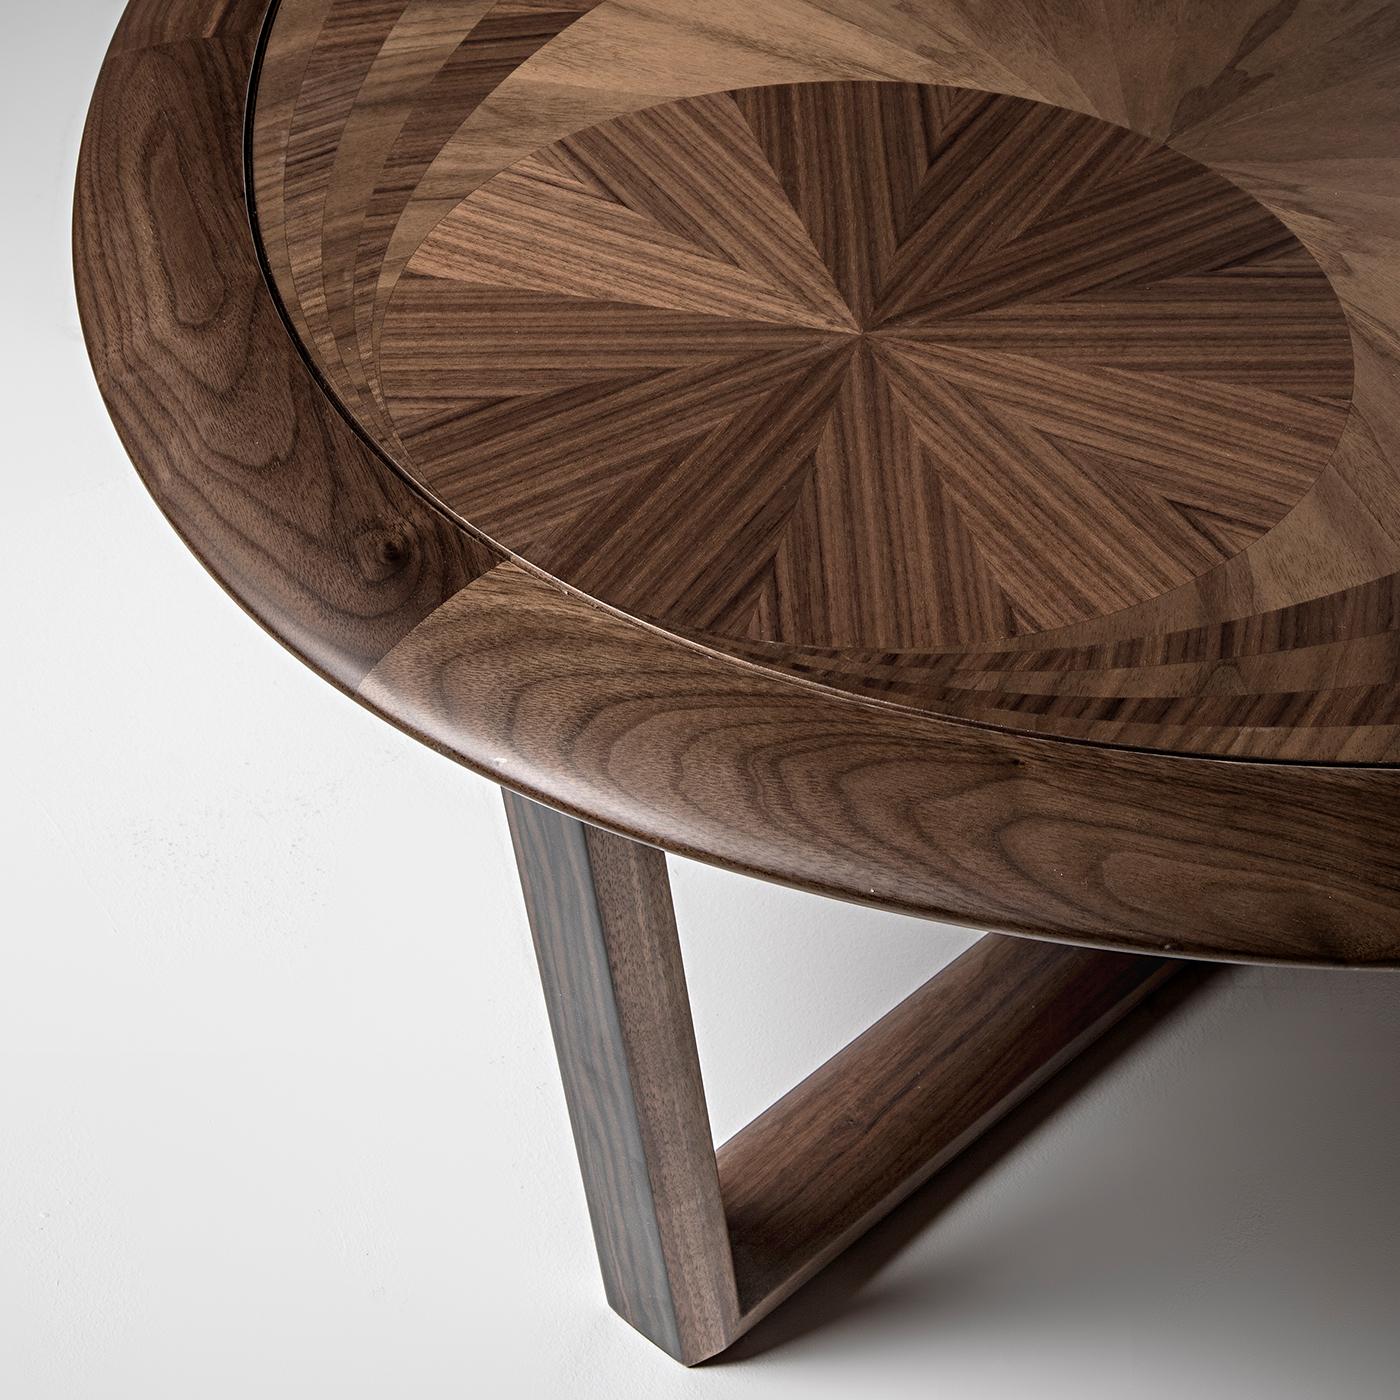 Le charme inégalé de cette table basse provient de l'interaction entre des bois précieux tels que le noyer Canaletto et l'ébène. Deux gracieux éléments angulaires se croisent à la base, créant un support dynamique pour le plateau ovale, dont le